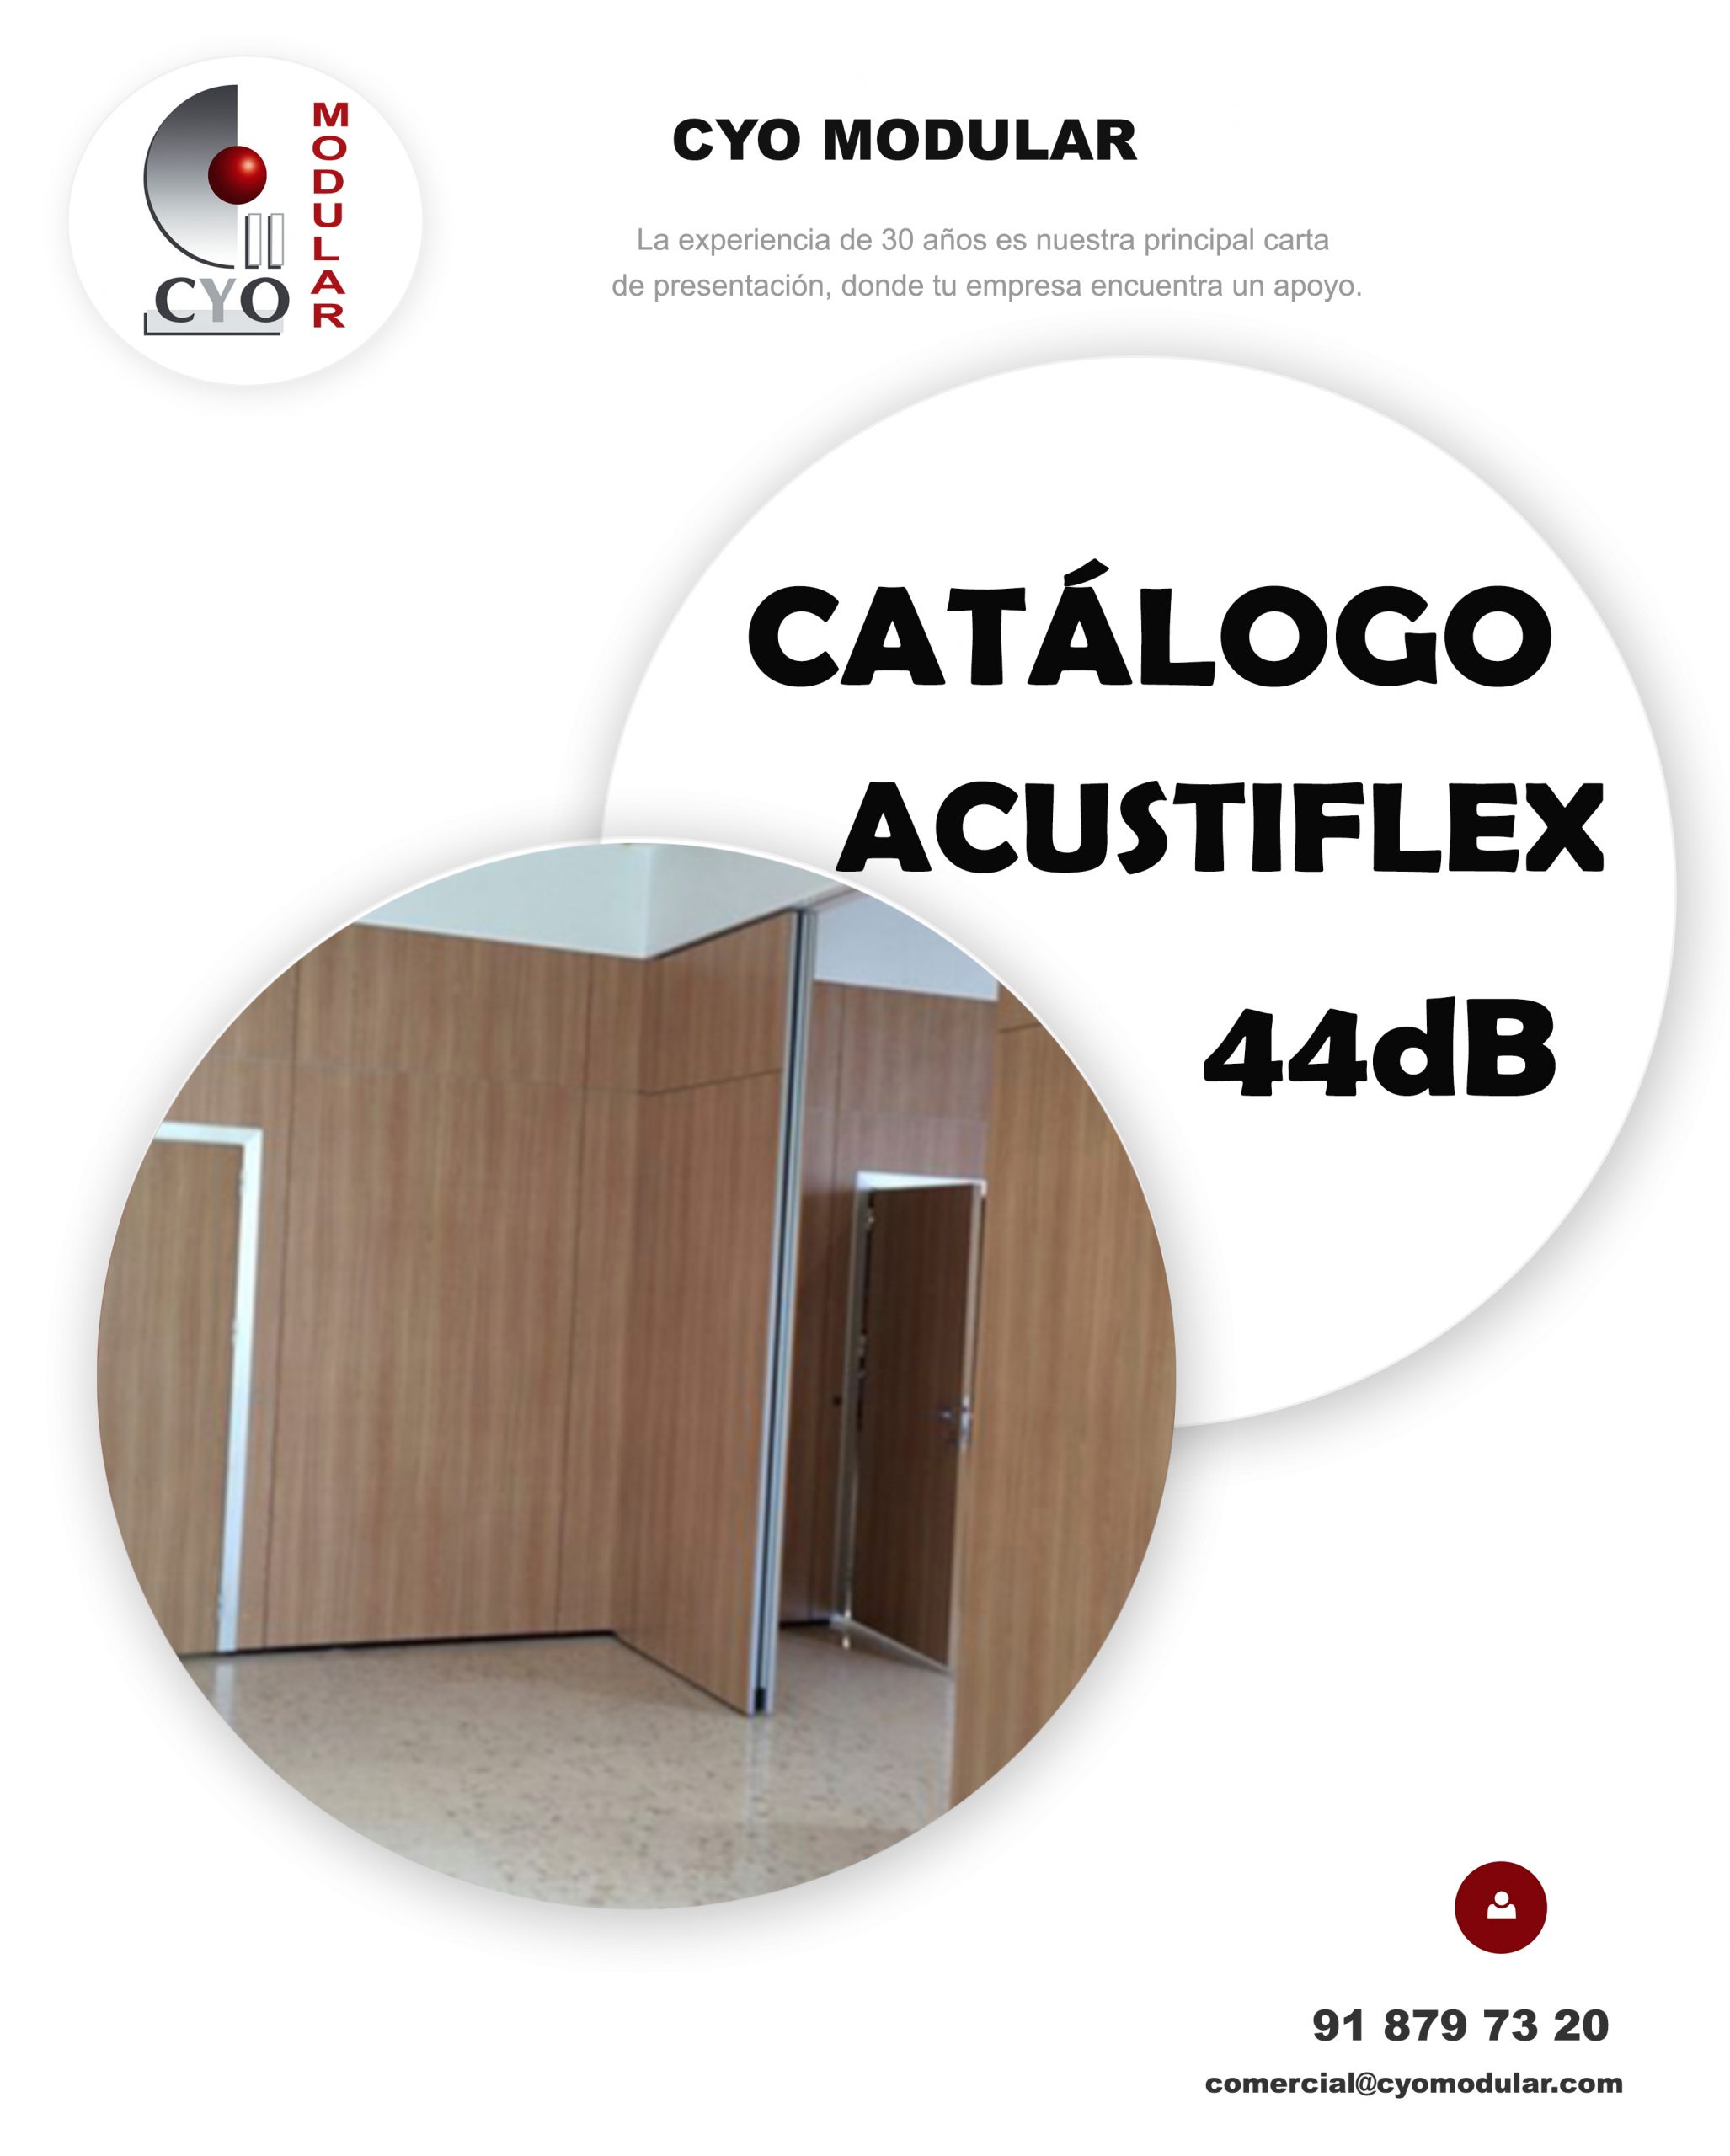 001. Acustiflex 44